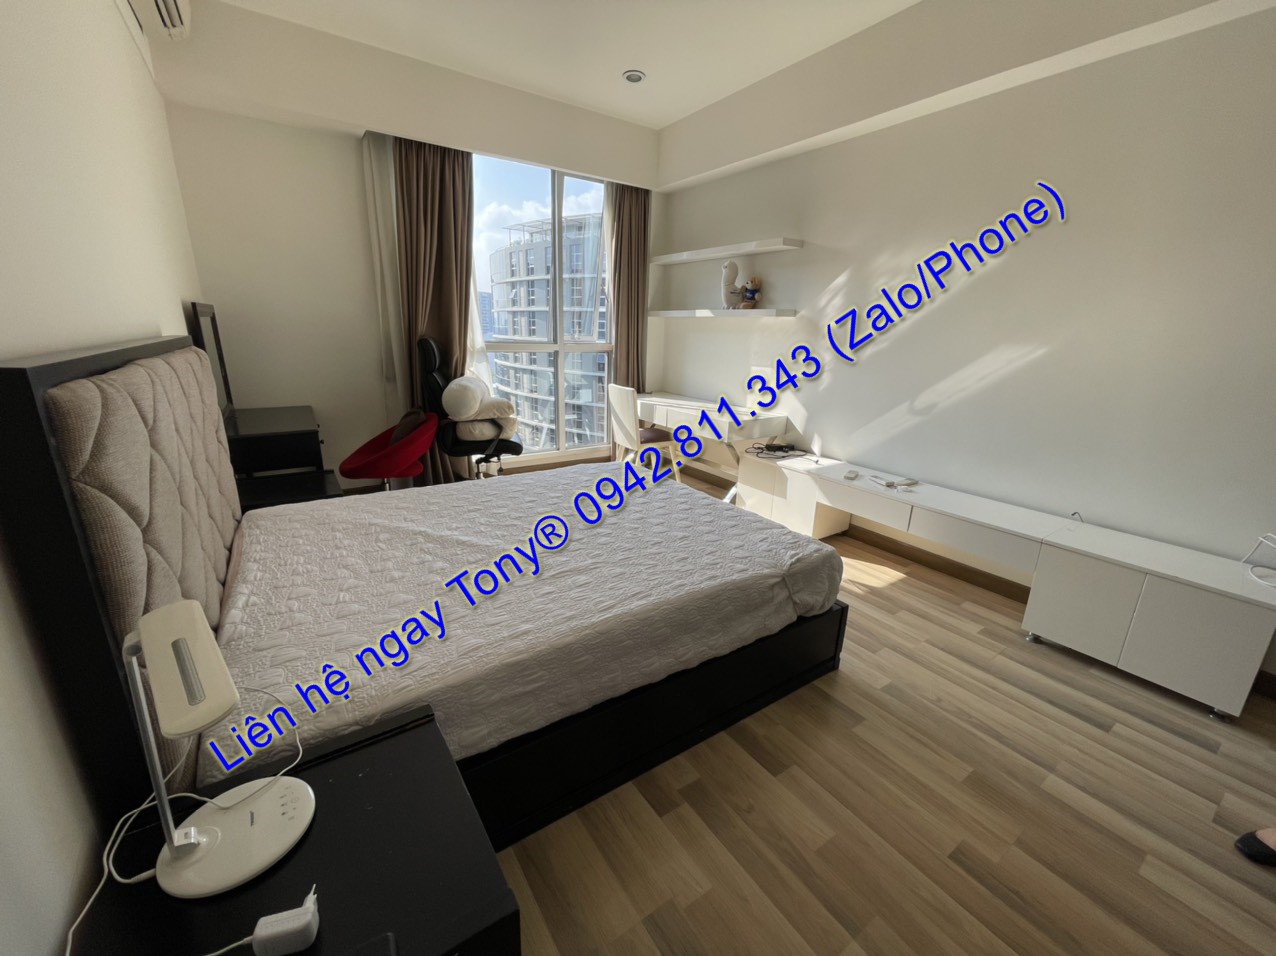 Cho thuê căn hộ 2 phòng ngủ view đẹp, toà B1 Saigon Airport Plaza full đồ 18 Triệu Tel 0942.811.343 Tony (Zalo/Phone) đi xem thực tế nhanh chóng.